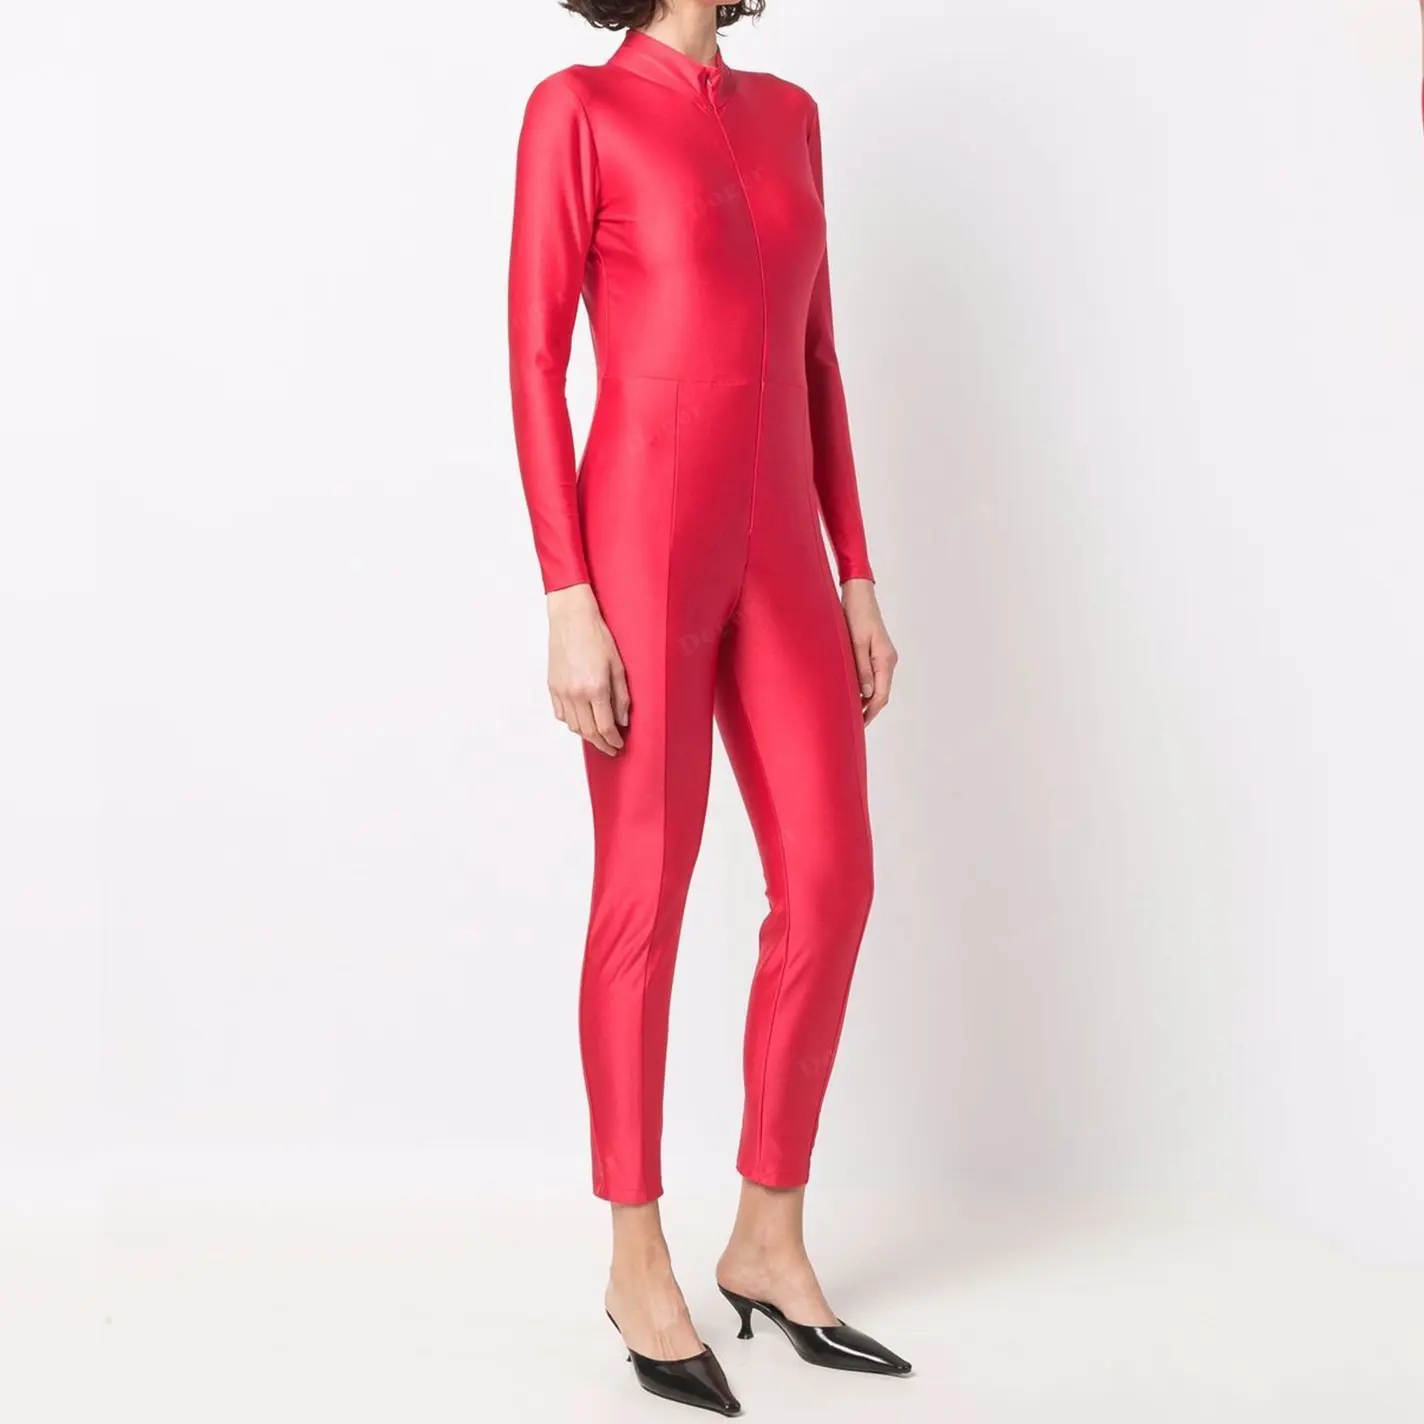 Combinaison Catsuit, Couture d'automne de luxe en Polyester pour femmes, manches longues, produit personnalisé, Sexy